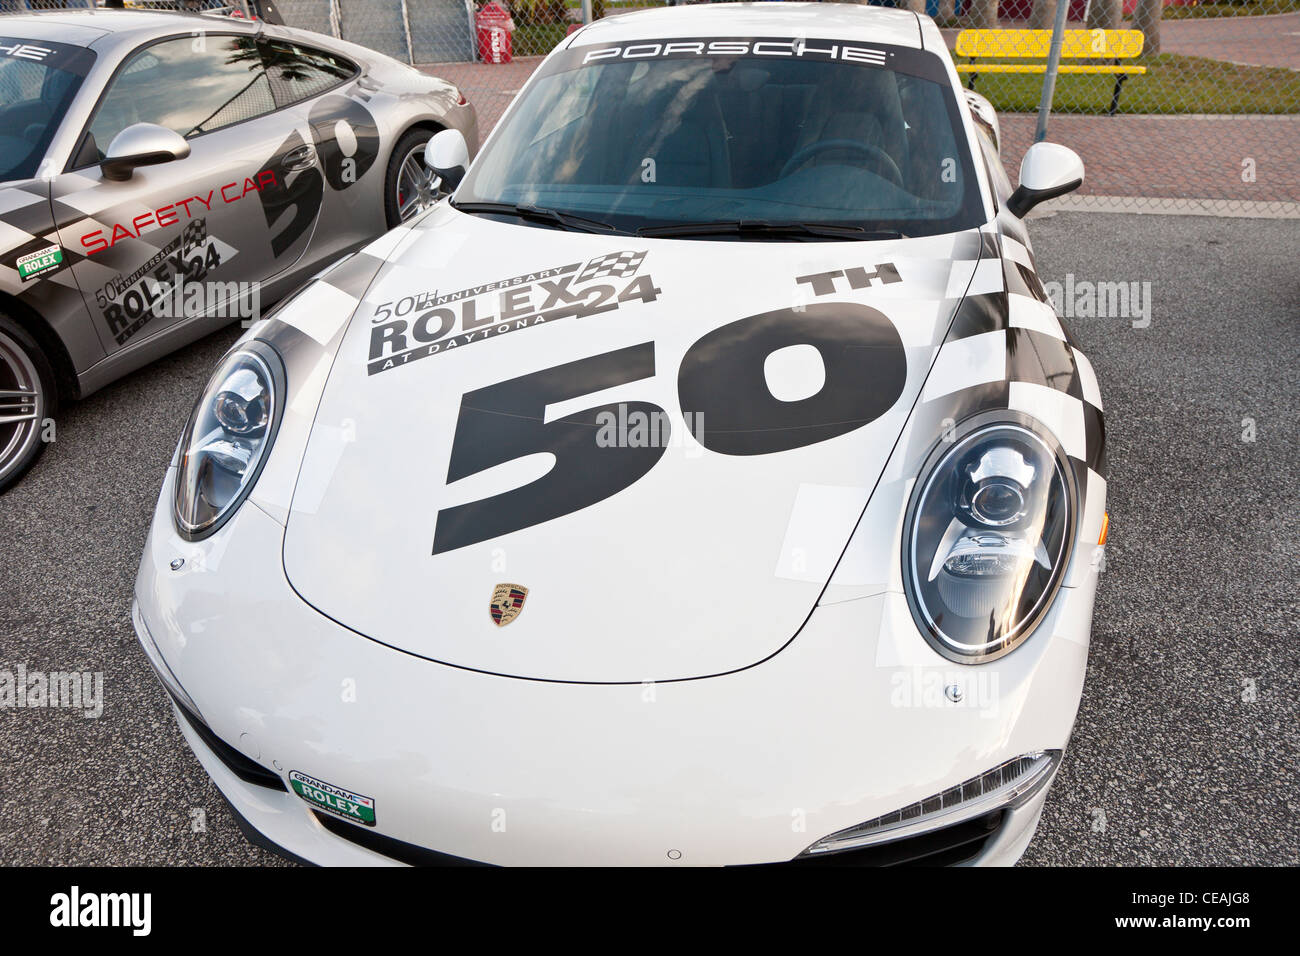 Porsche coches de seguridad, con el 50 aniversario Rolex 24 en Daytona emblemas en Daytona International Speedway Foto de stock